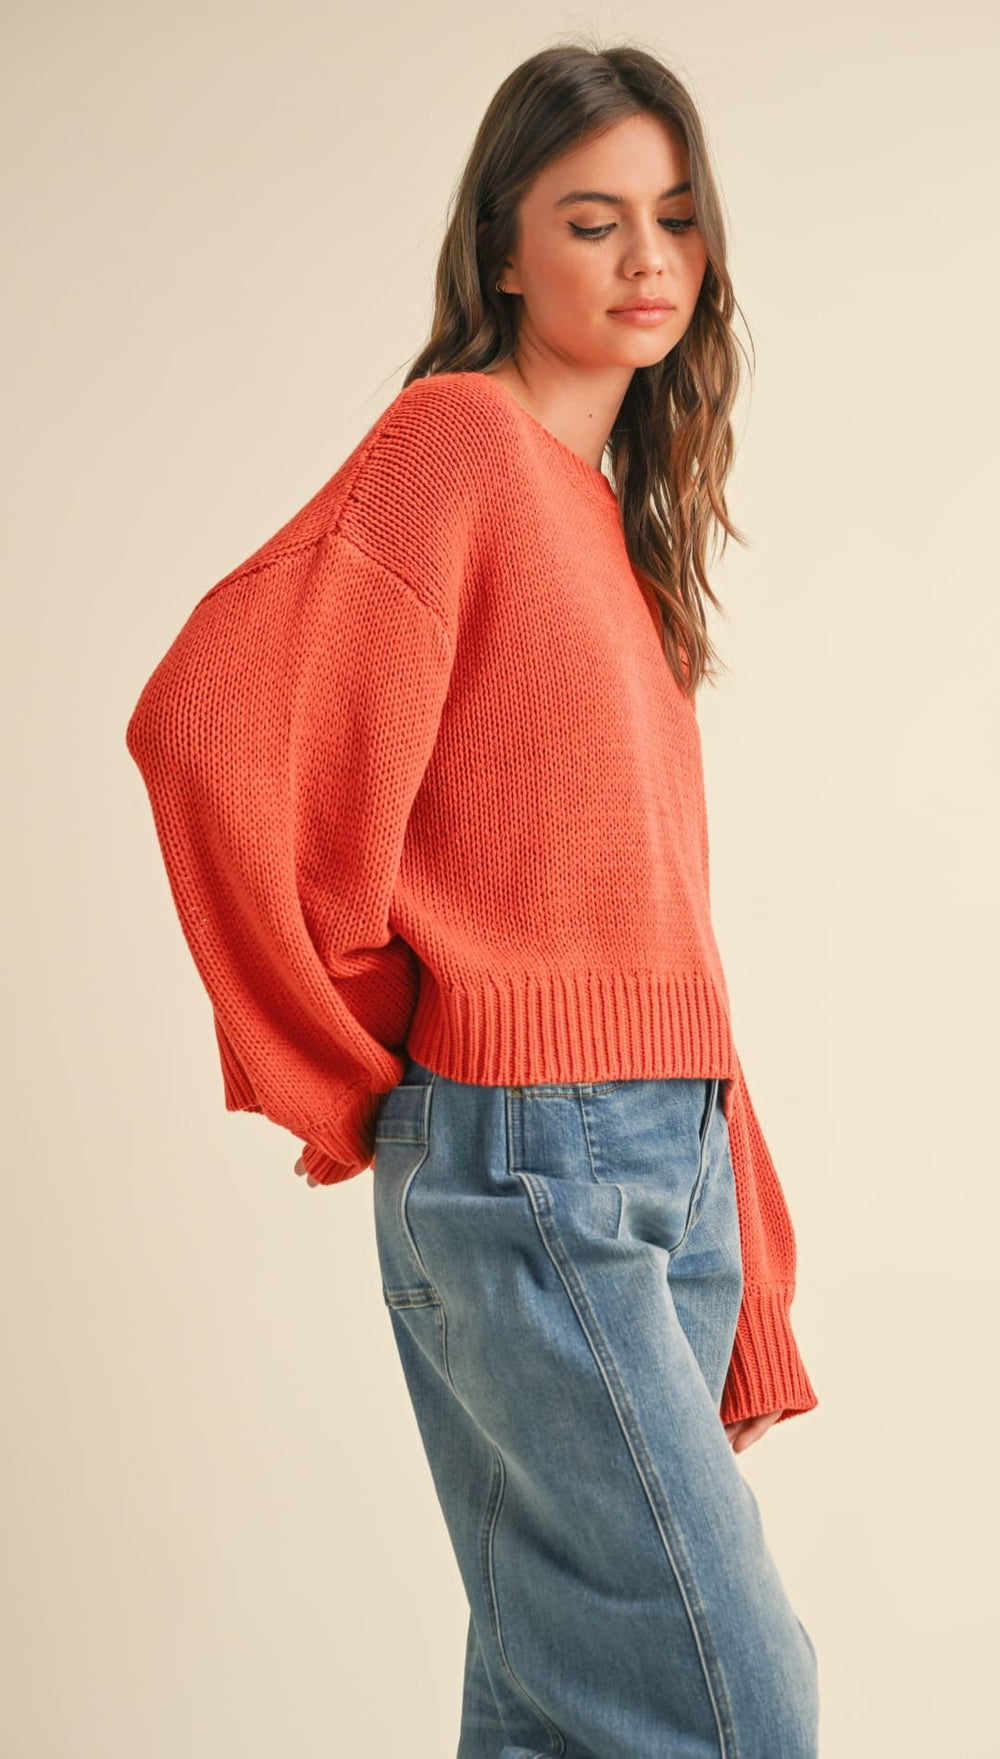 Renee’ Balloon Sweater - 140 Sweaters